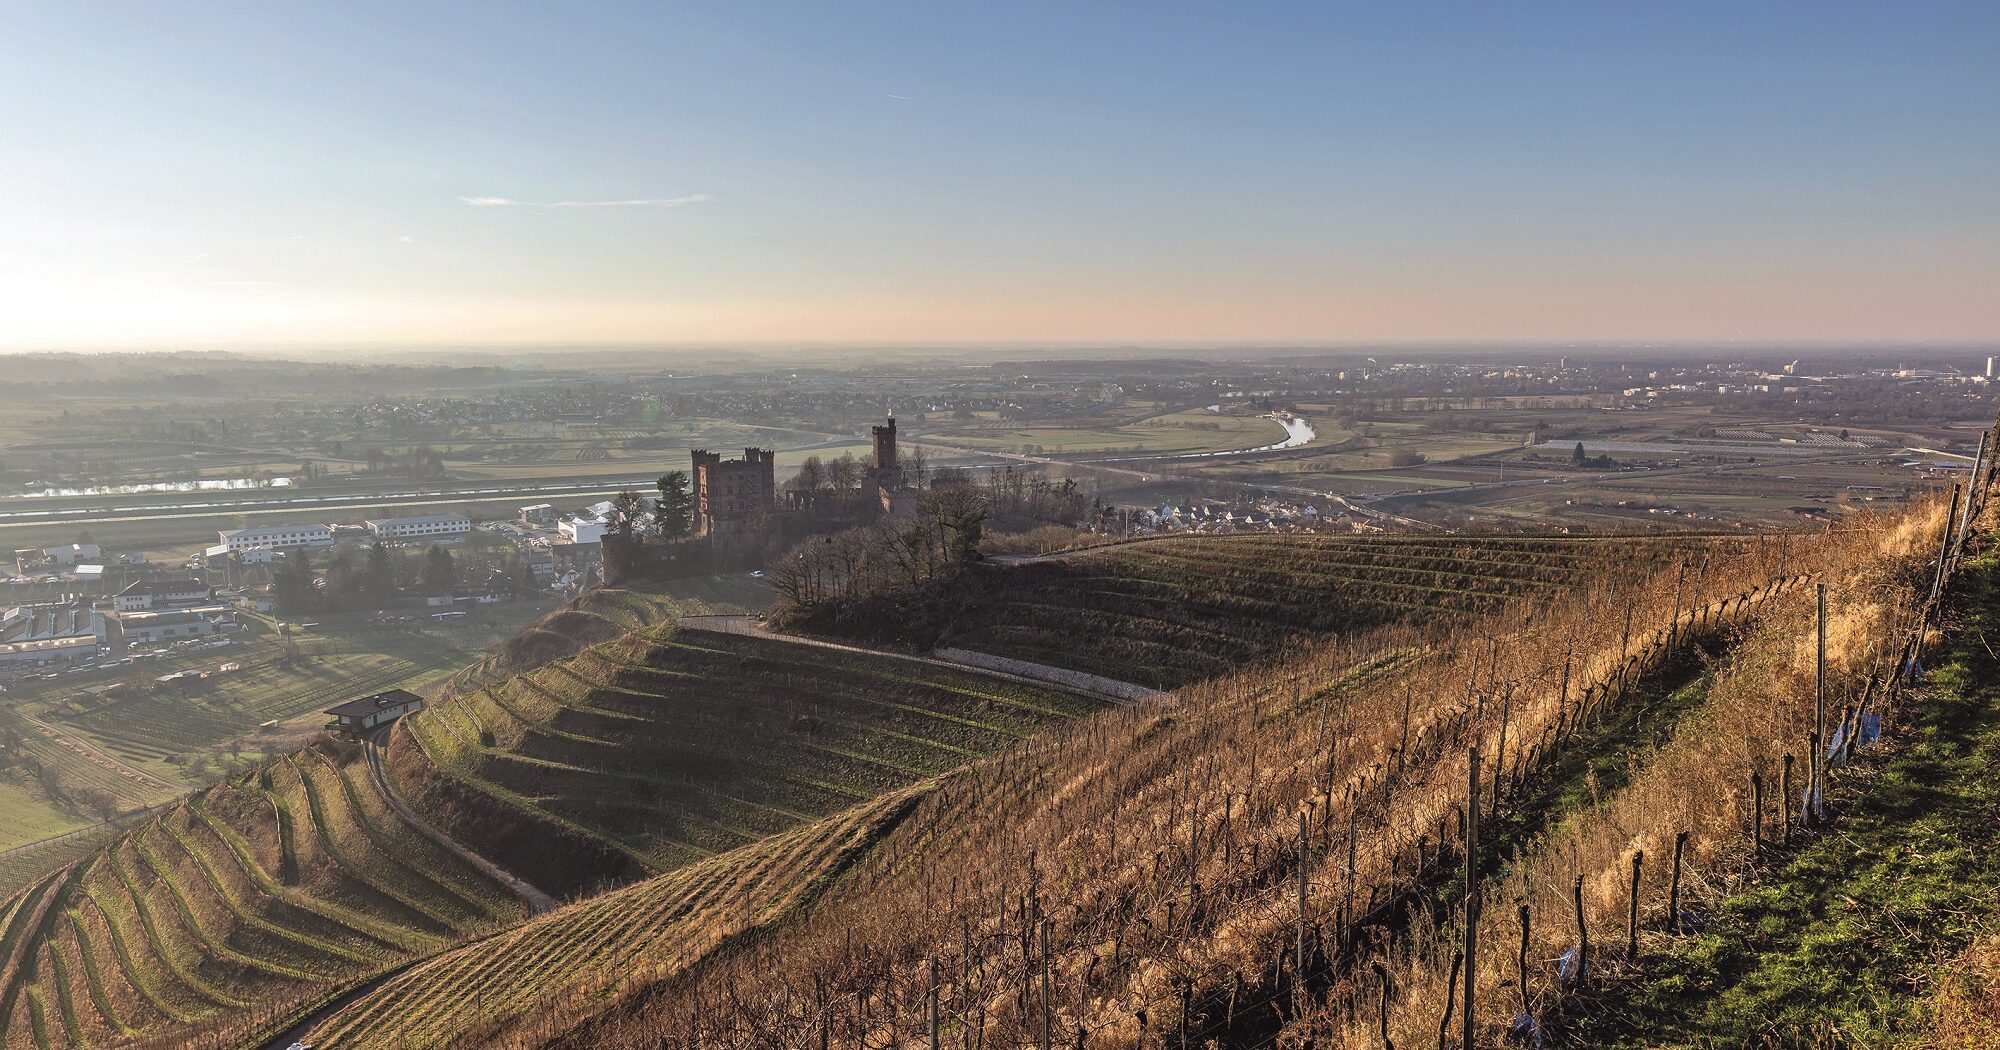 Das Schloss Ortenberg steht inmitten von Weinreben während im Hintergrund die Stadt Offenburg und die Ortenau zu sehen sind